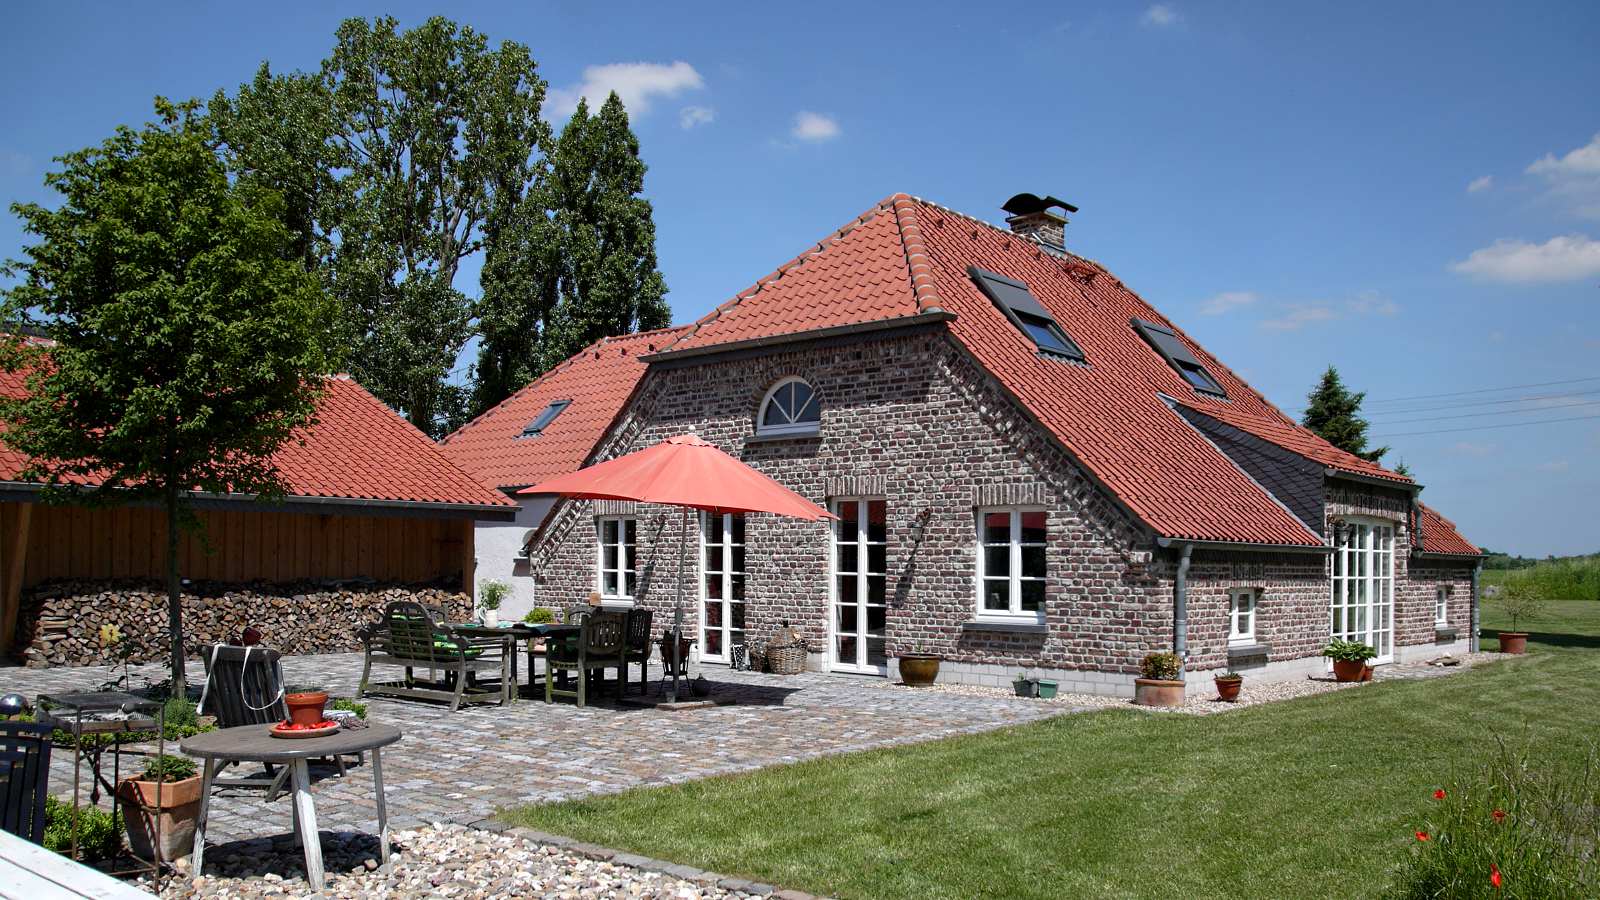 Neubau und Renovierung von historischen Bauernhäusern. #Neubau #Bauernhaus #Landleben #Niederrheinkate BauernHausManufaktur